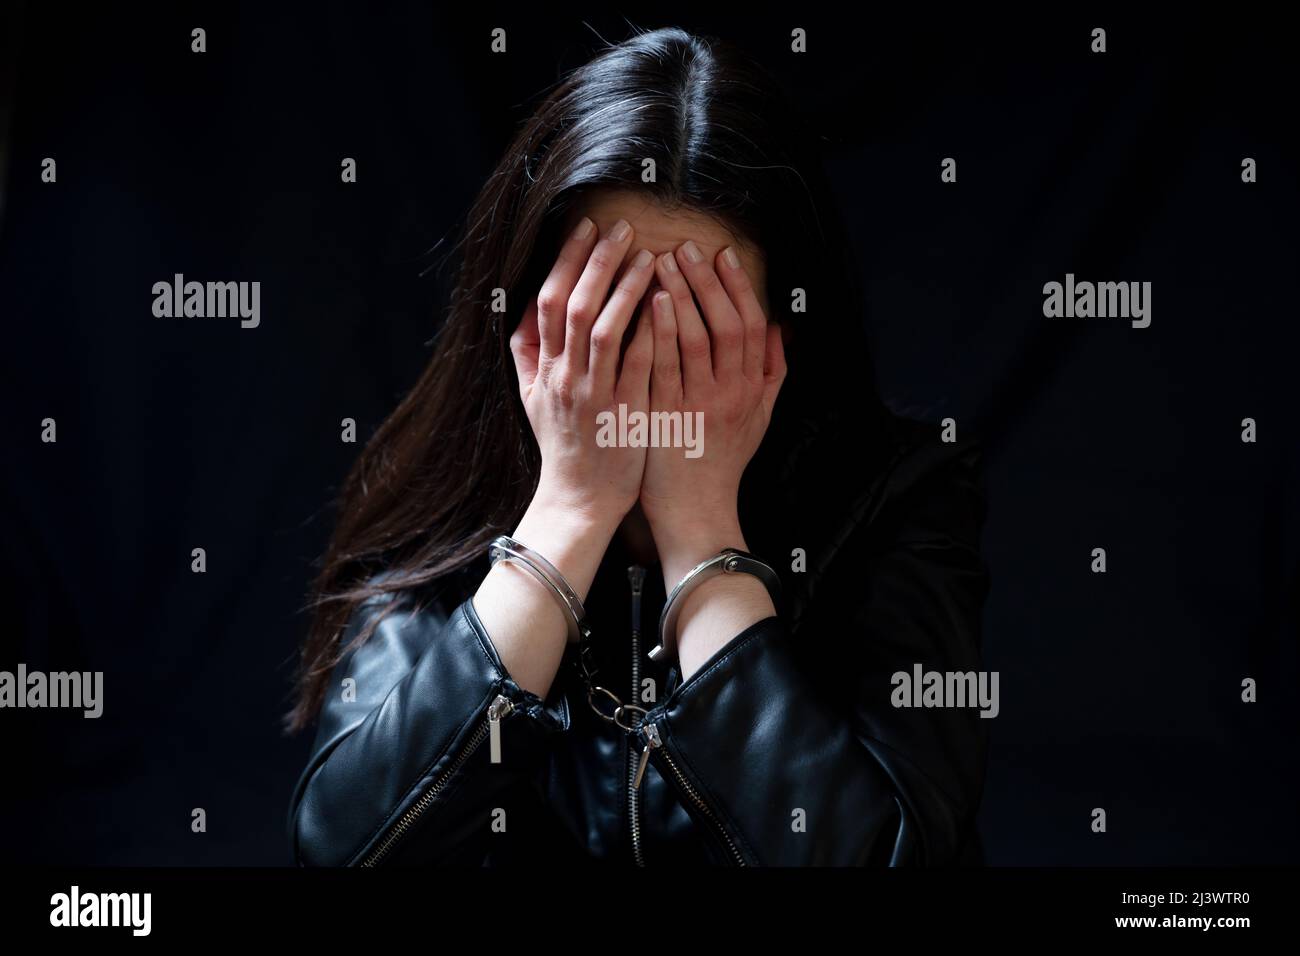 Eine junge Frau bedeckt das Auge, traurig und vernarbt in einem dunklen Raum. Angst und Verzweiflung Konzept Stockfoto